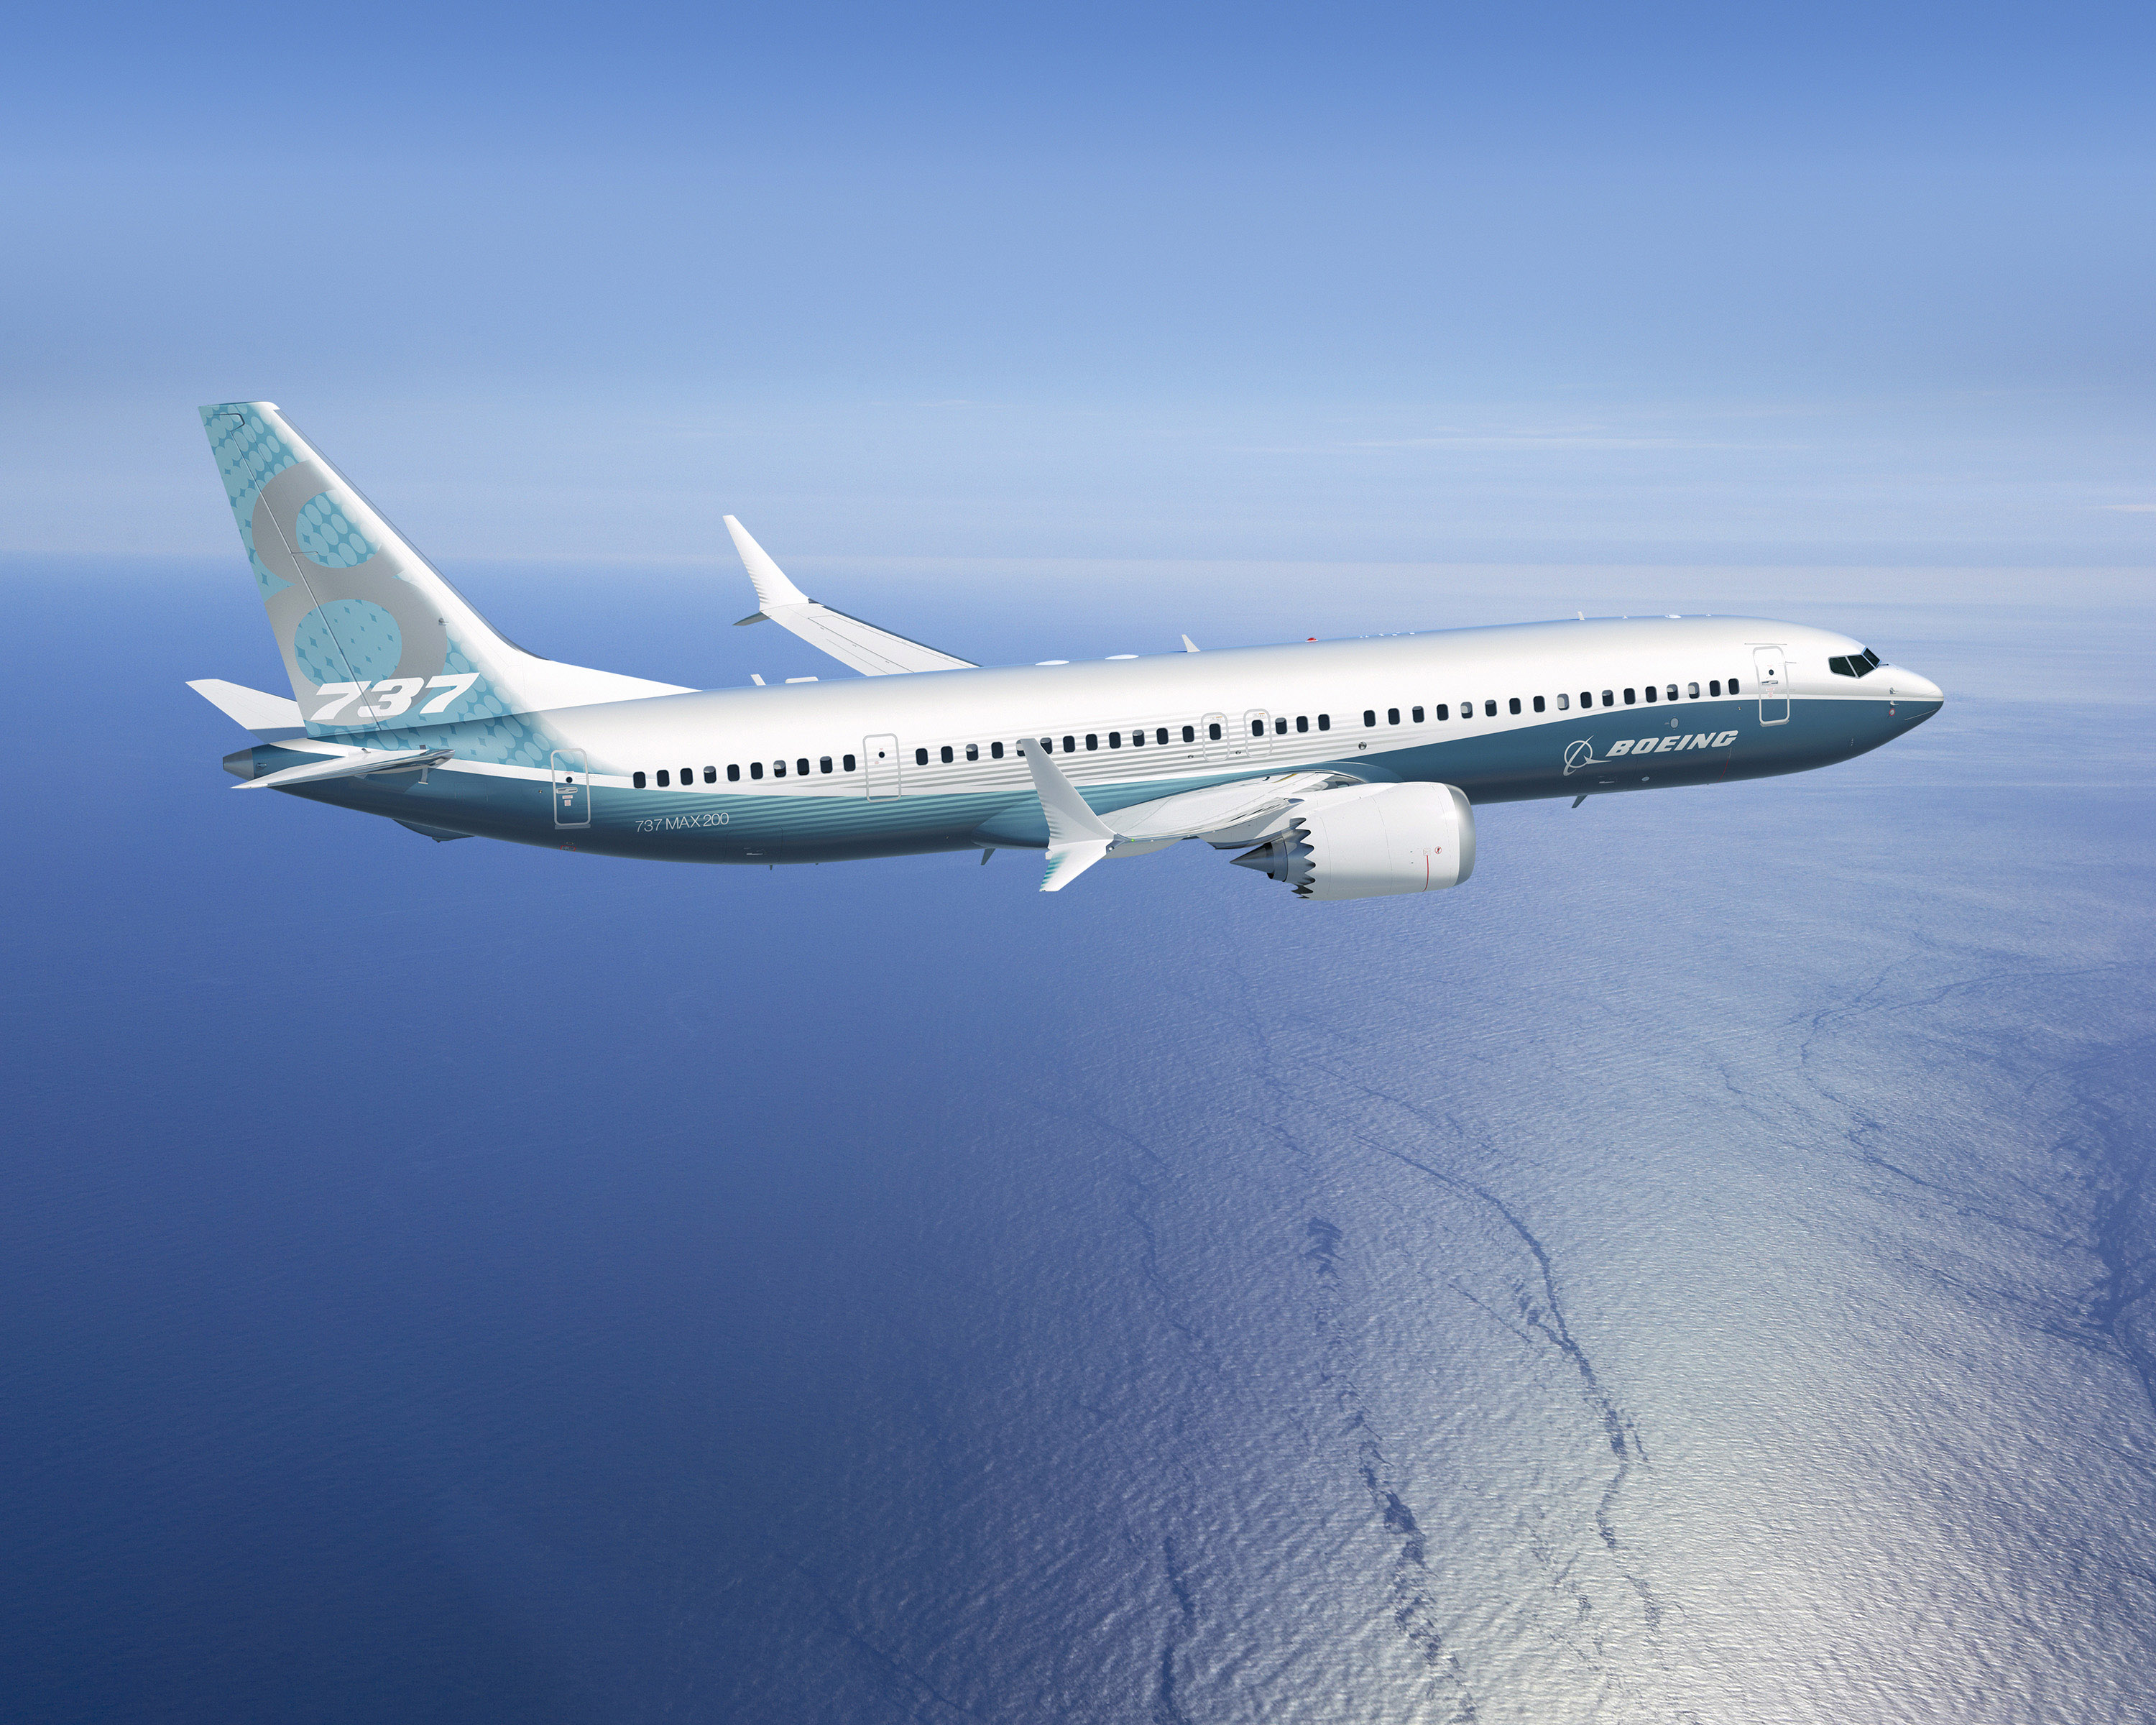 ...és a szokásos Boeing-fazonban: nyilván lesz még légitársaság, amelynek vonzóak a hatékonysági adatok